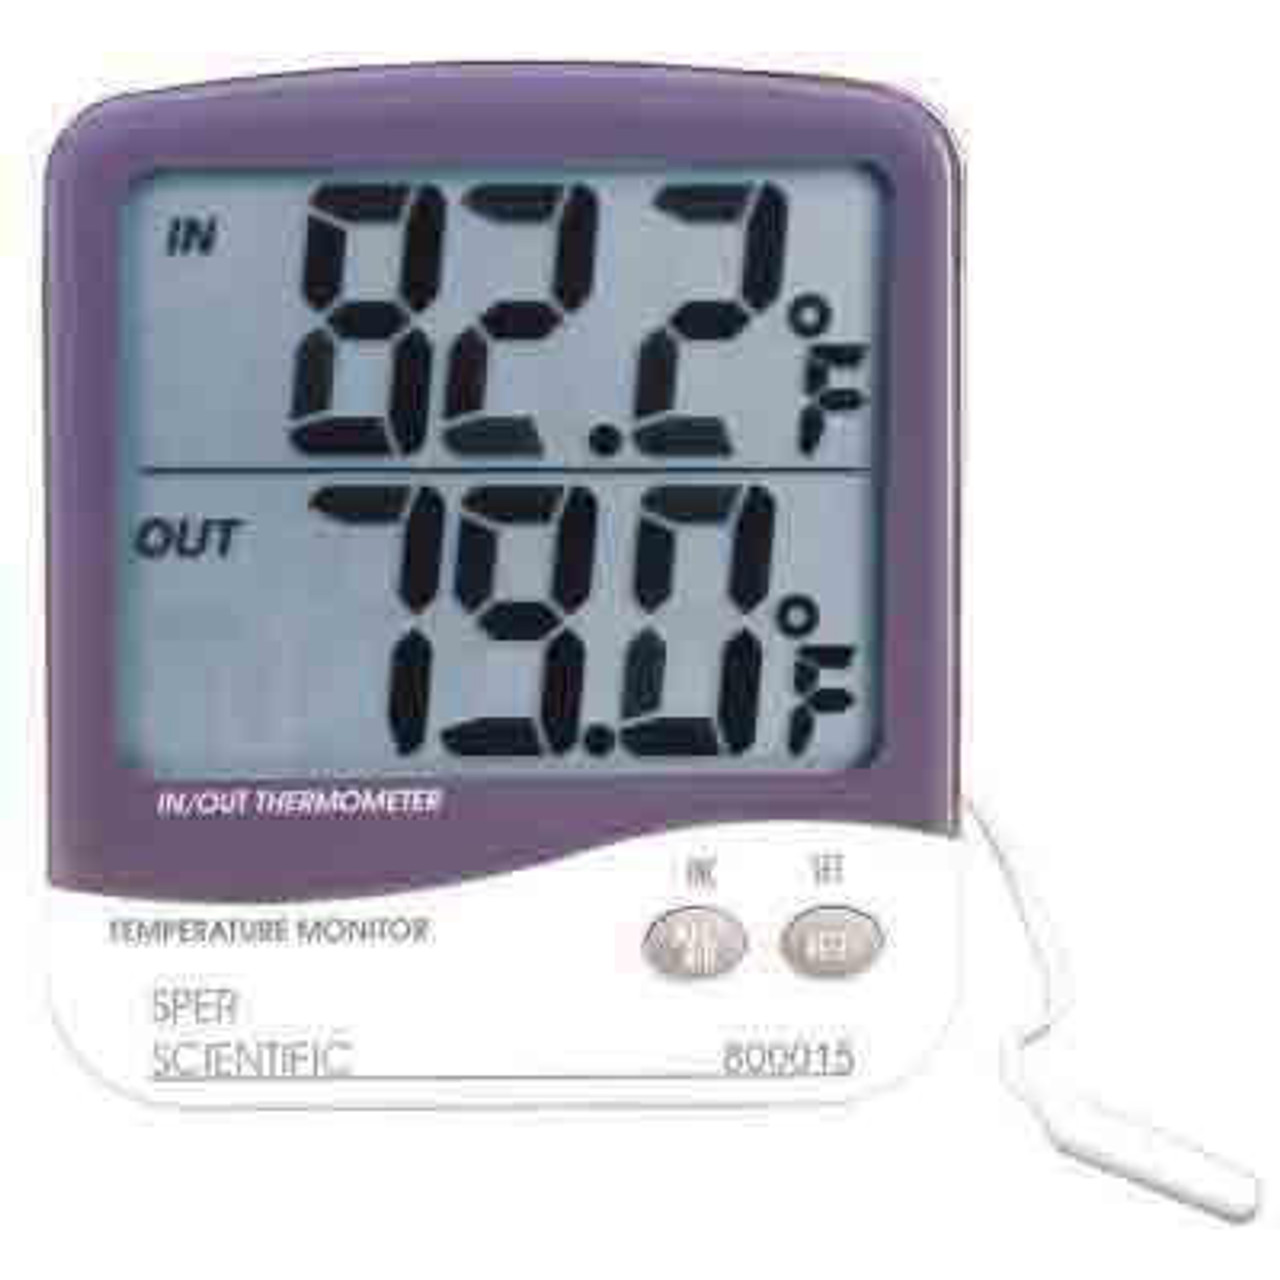  Indoor Outdoor Thermometer Hygrometer - Waterproof